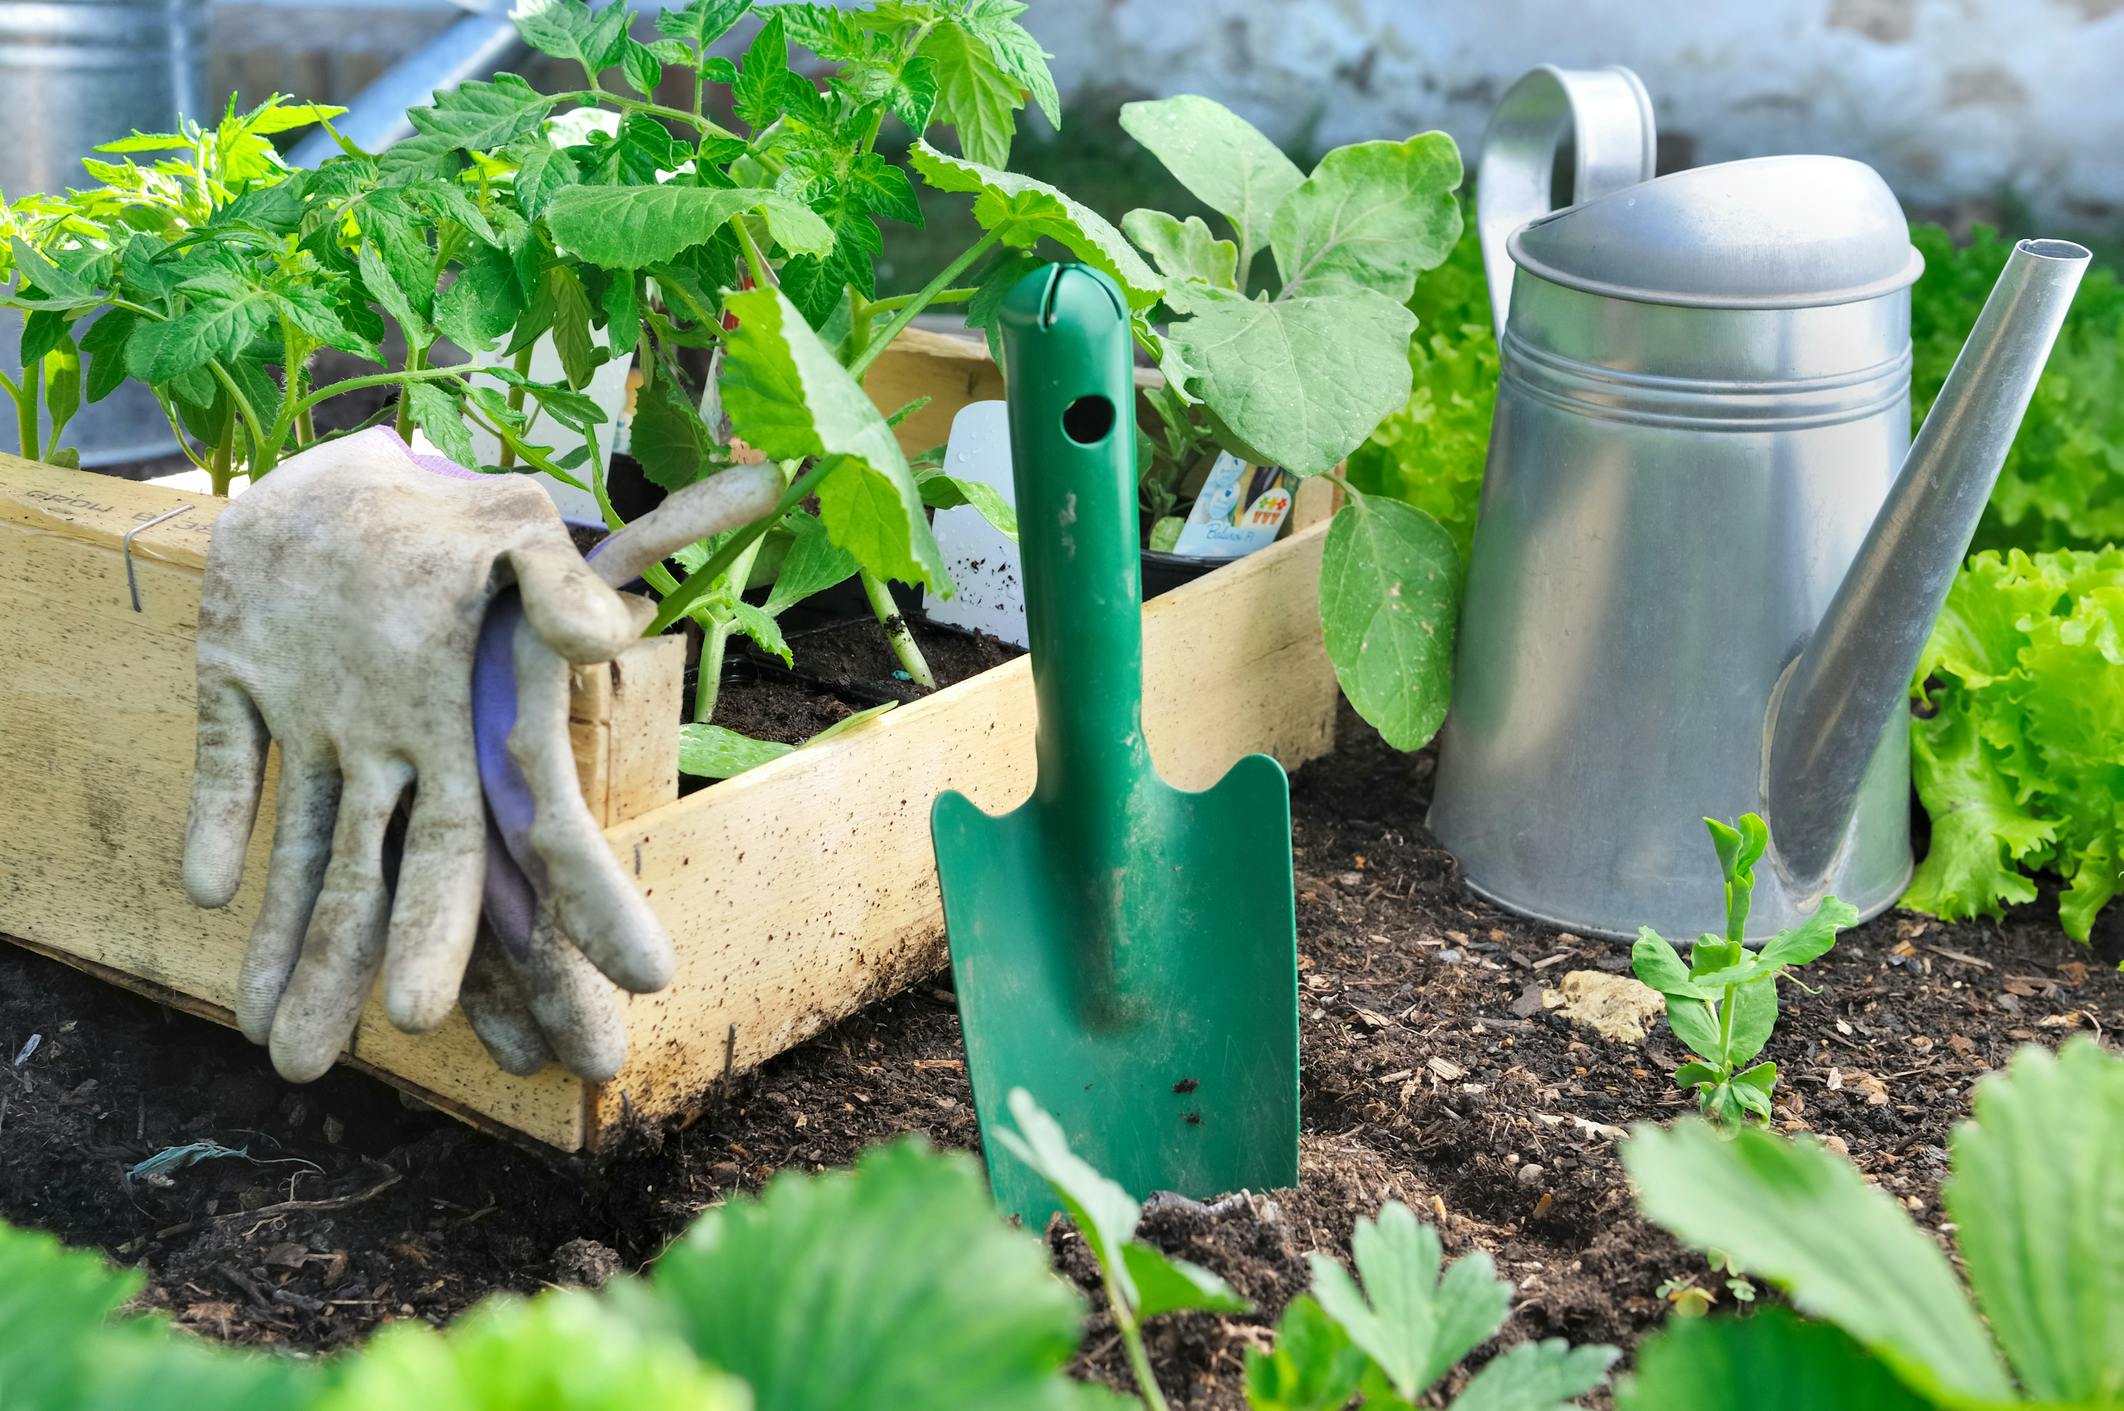 Budget-friendly gardening supplies